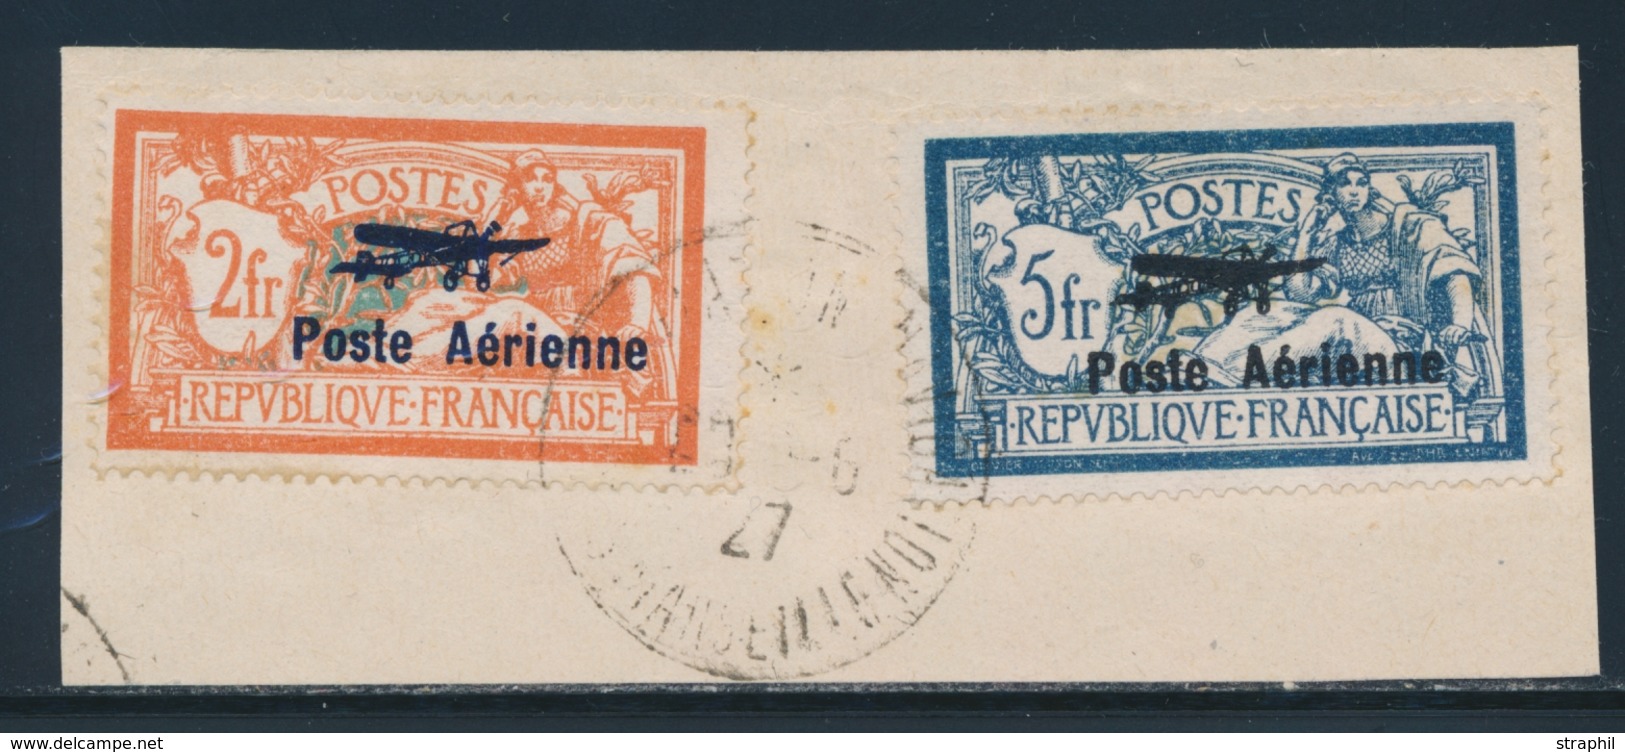 F POSTE AERIENNE - F - N°1/2 - Obl. Paris - Juin 1930 - TB - 1927-1959 Mint/hinged